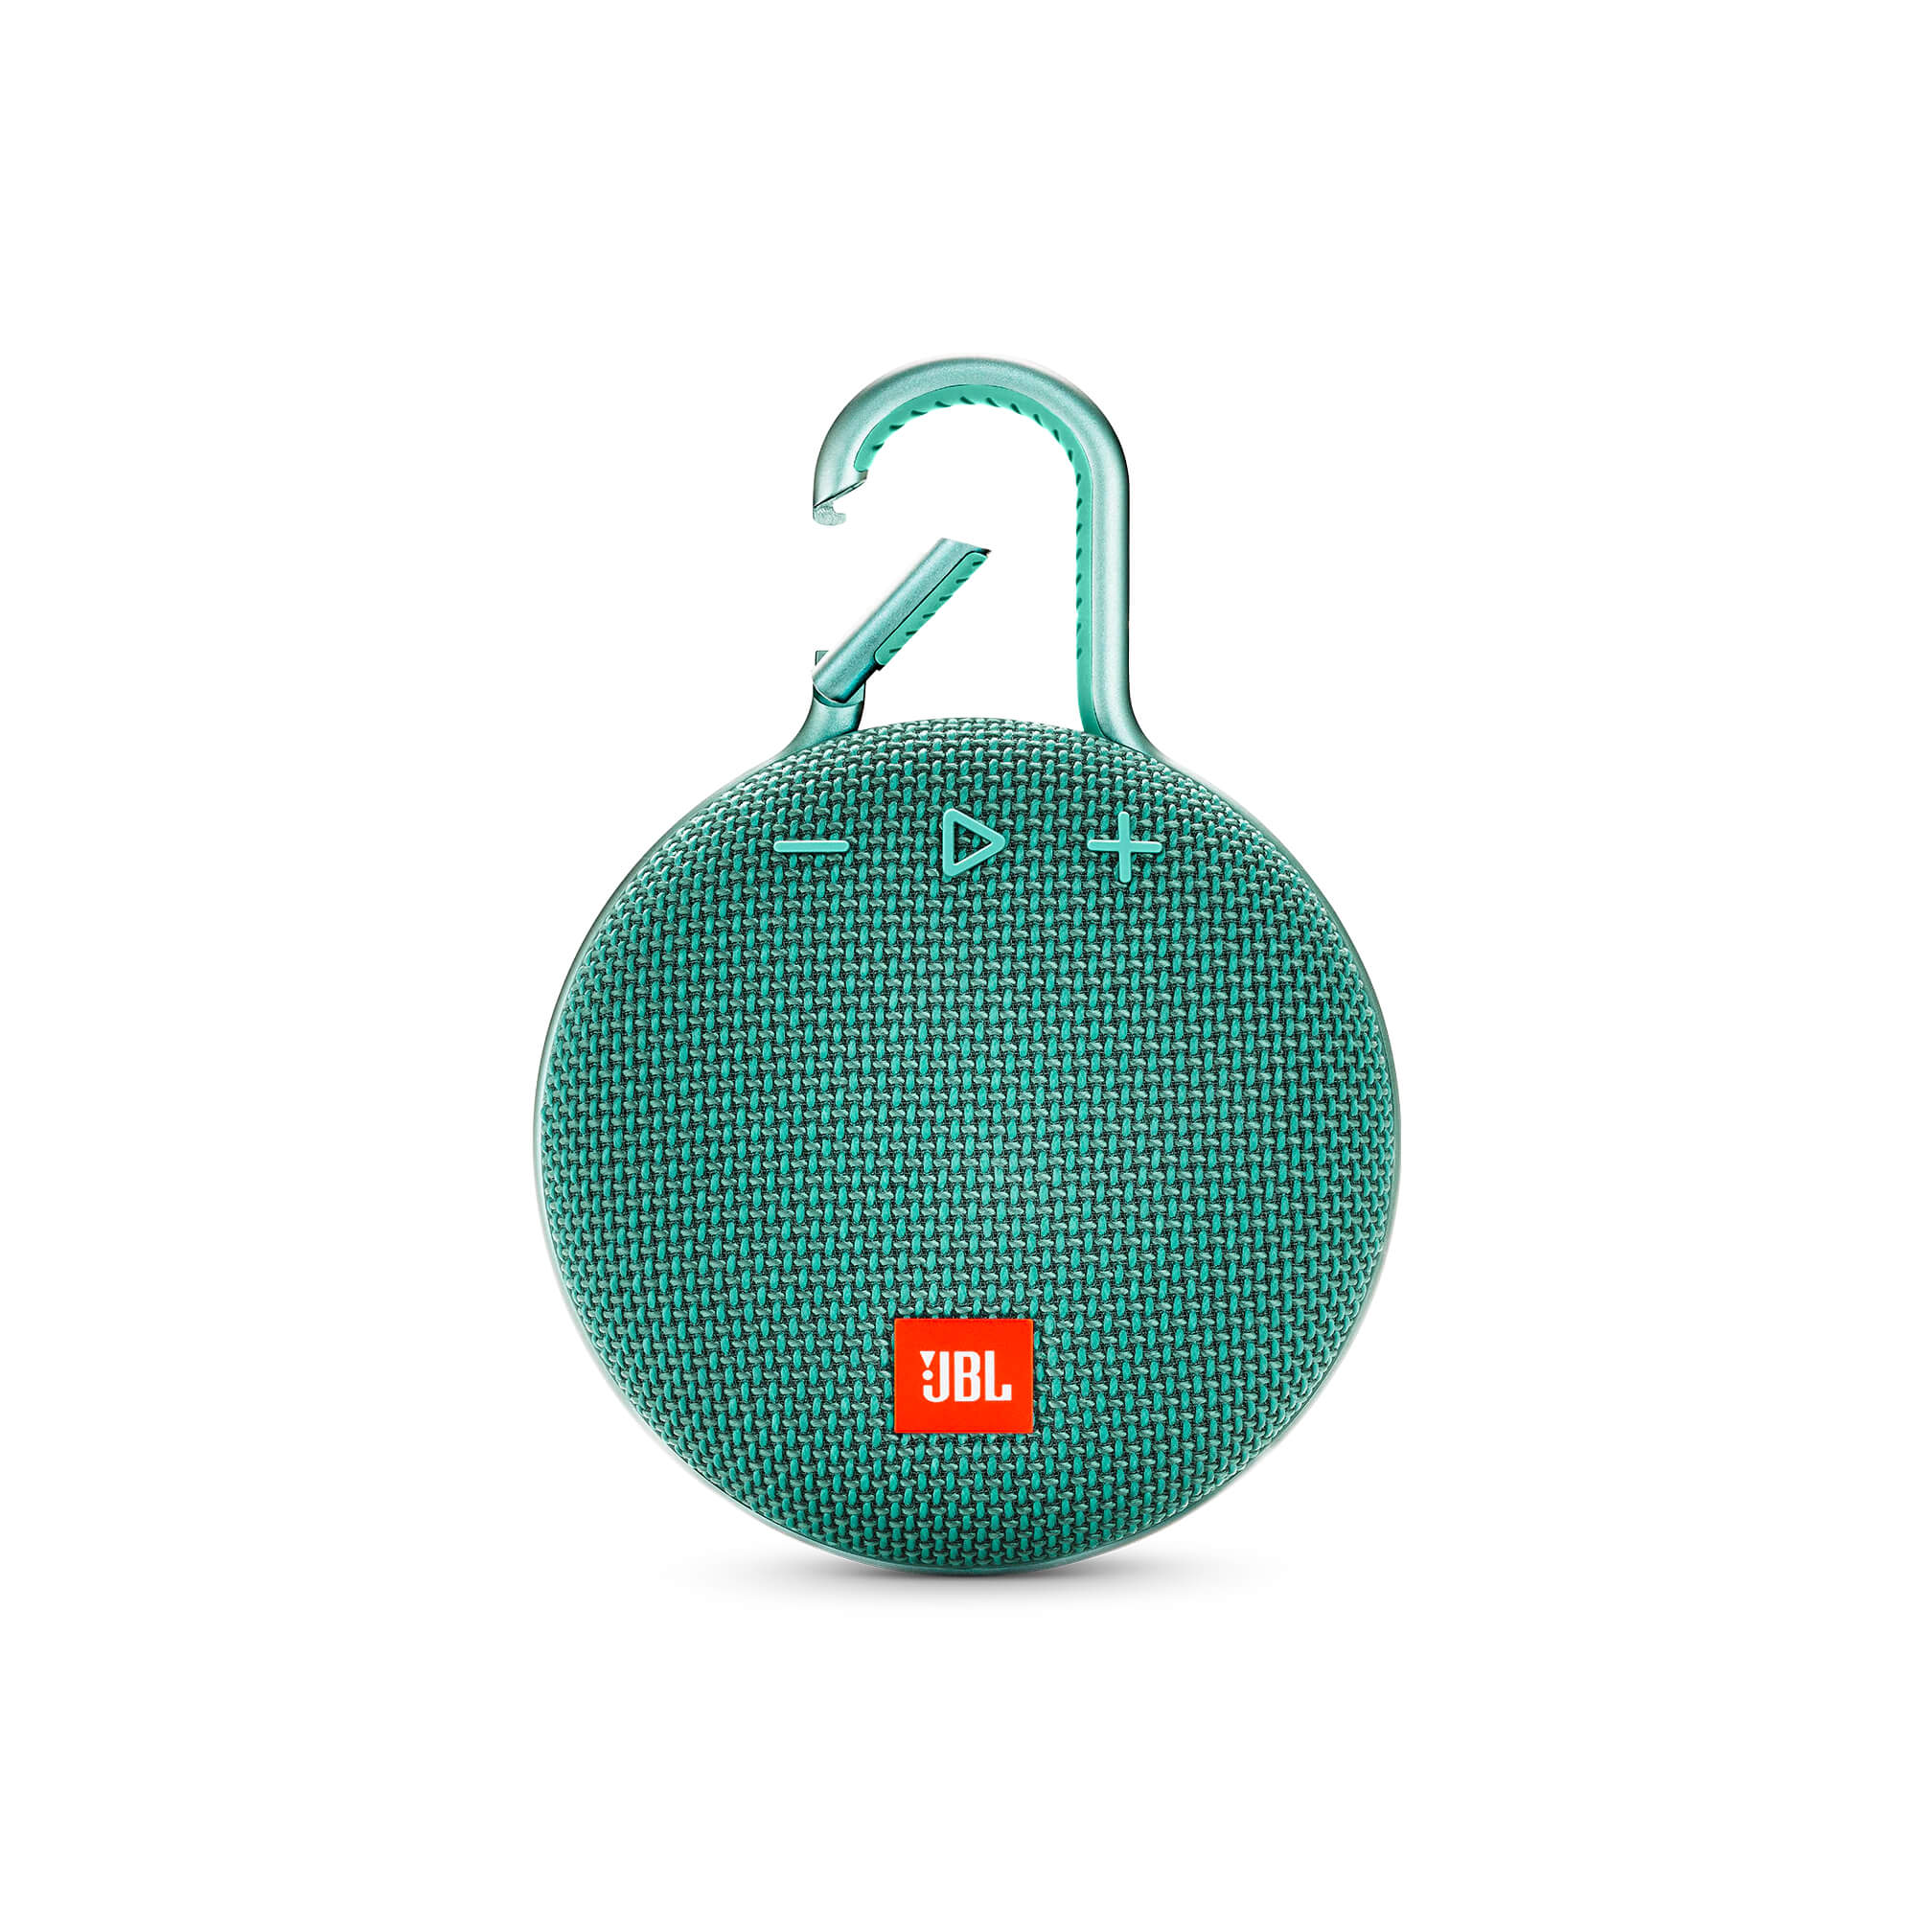 JBL Clip 3 Portable Waterproof Wireless Bluetooth Speaker, Teal - Certified Refurbished